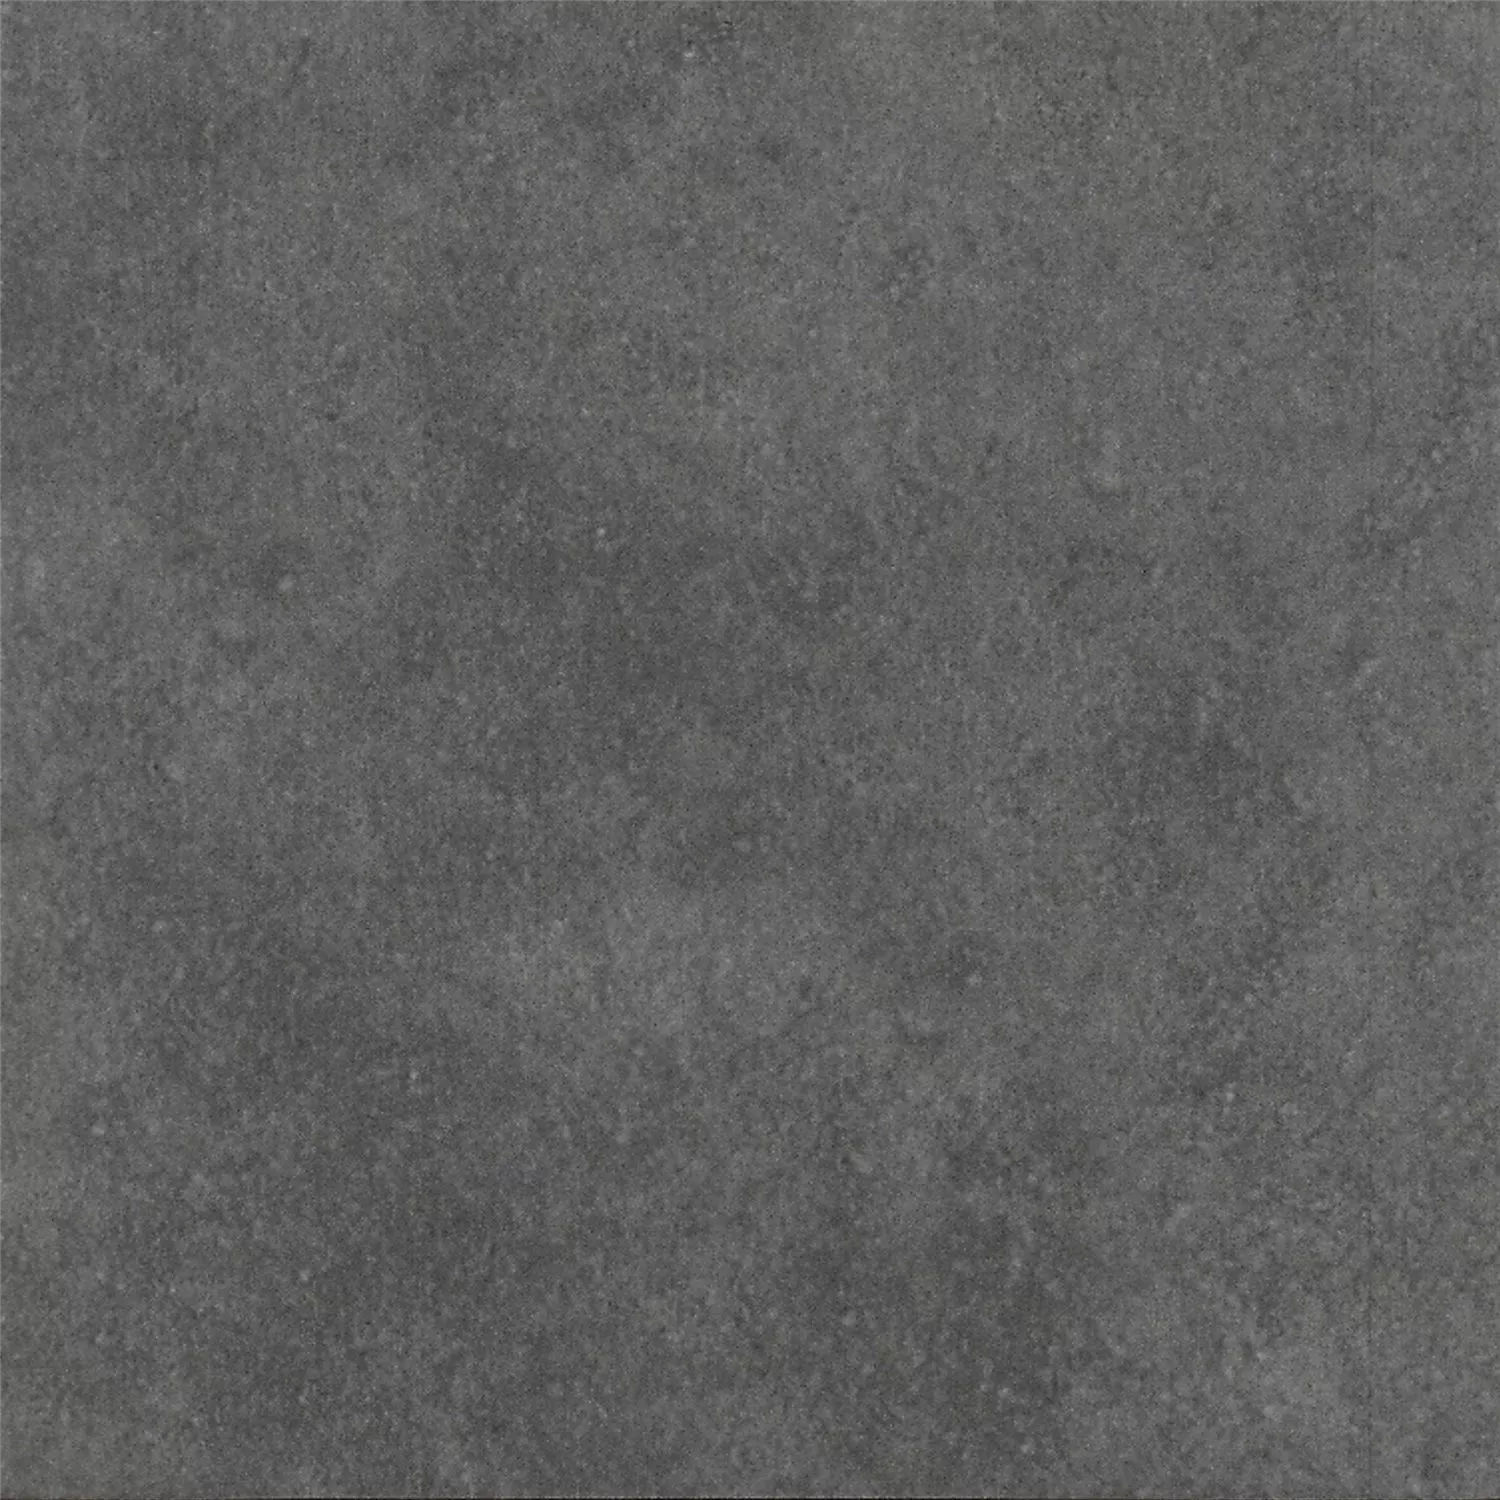 Όψη Πλακιδίων Tσιμέντου Gotik Πλακάκι Bάσης Σκούρο Γκρι 22,3x22,3cm